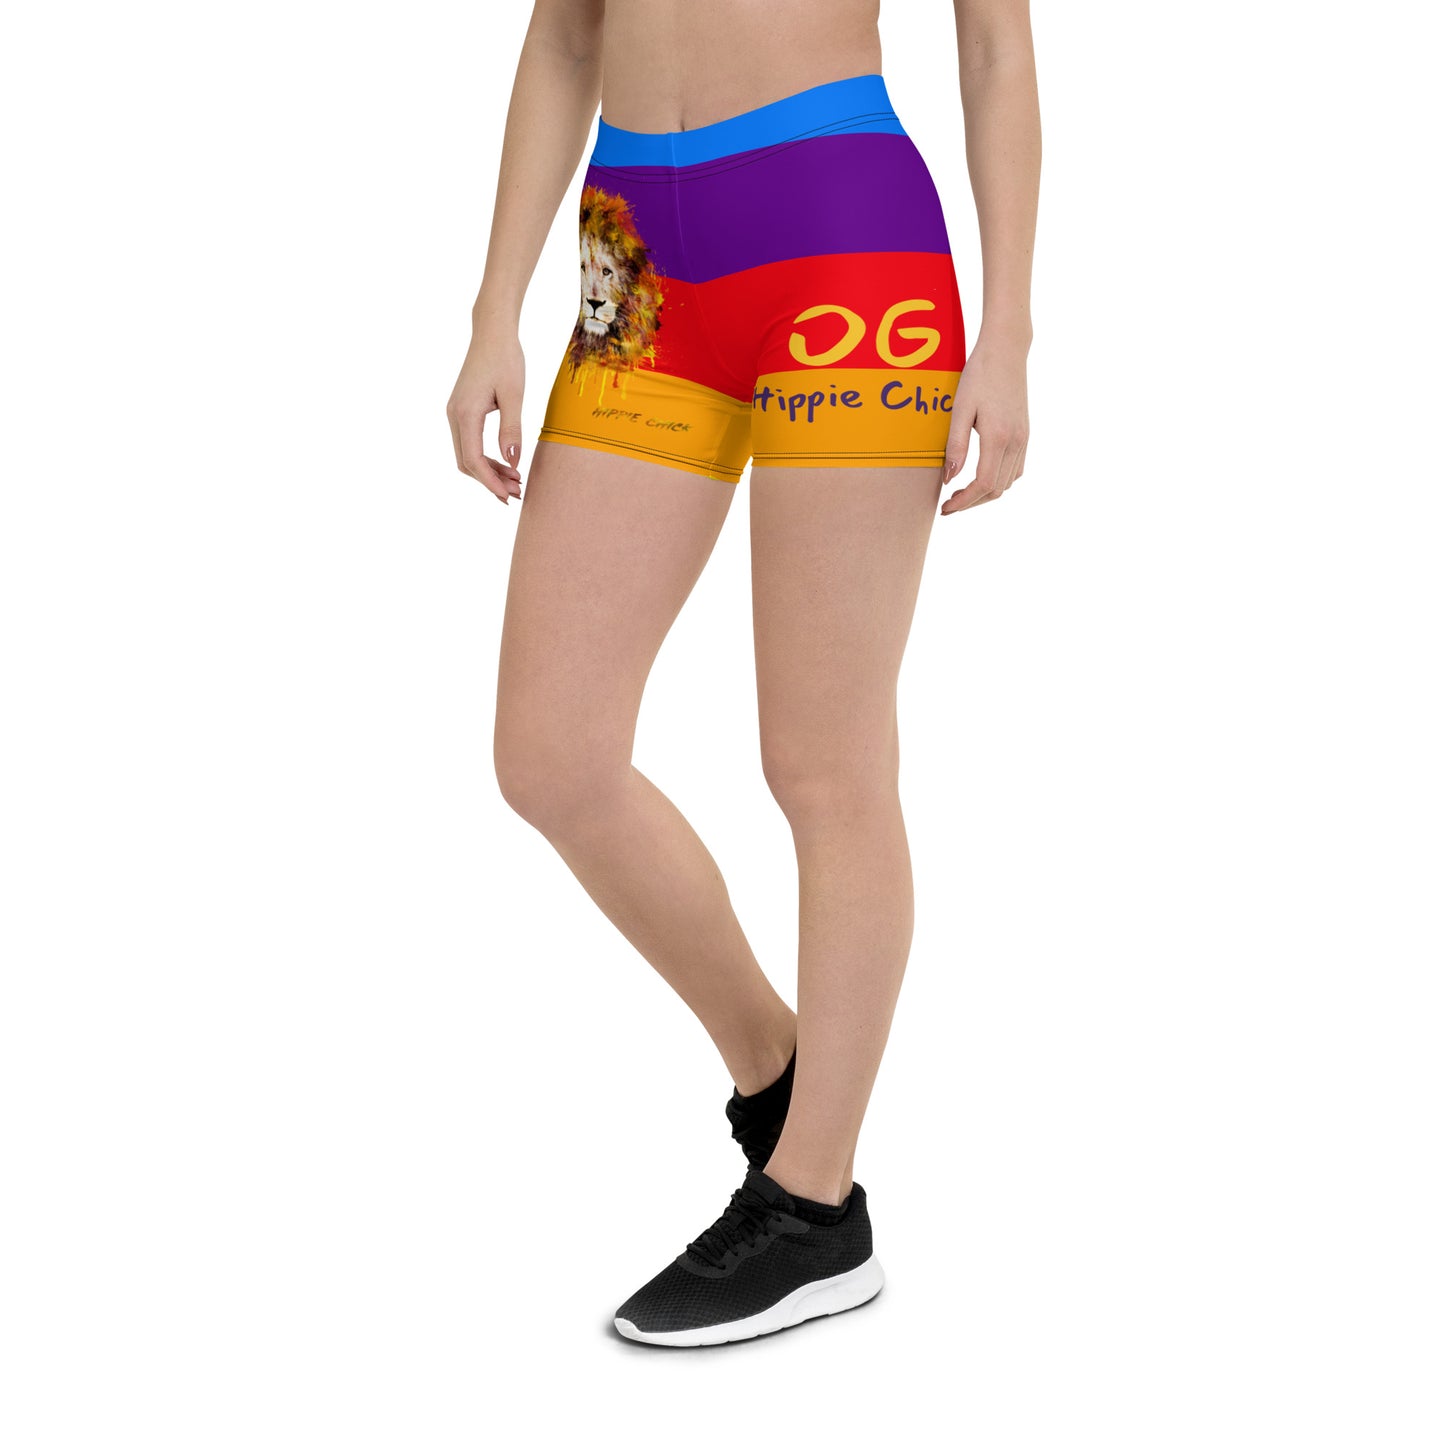 Rainbow 1 Tight Shorts